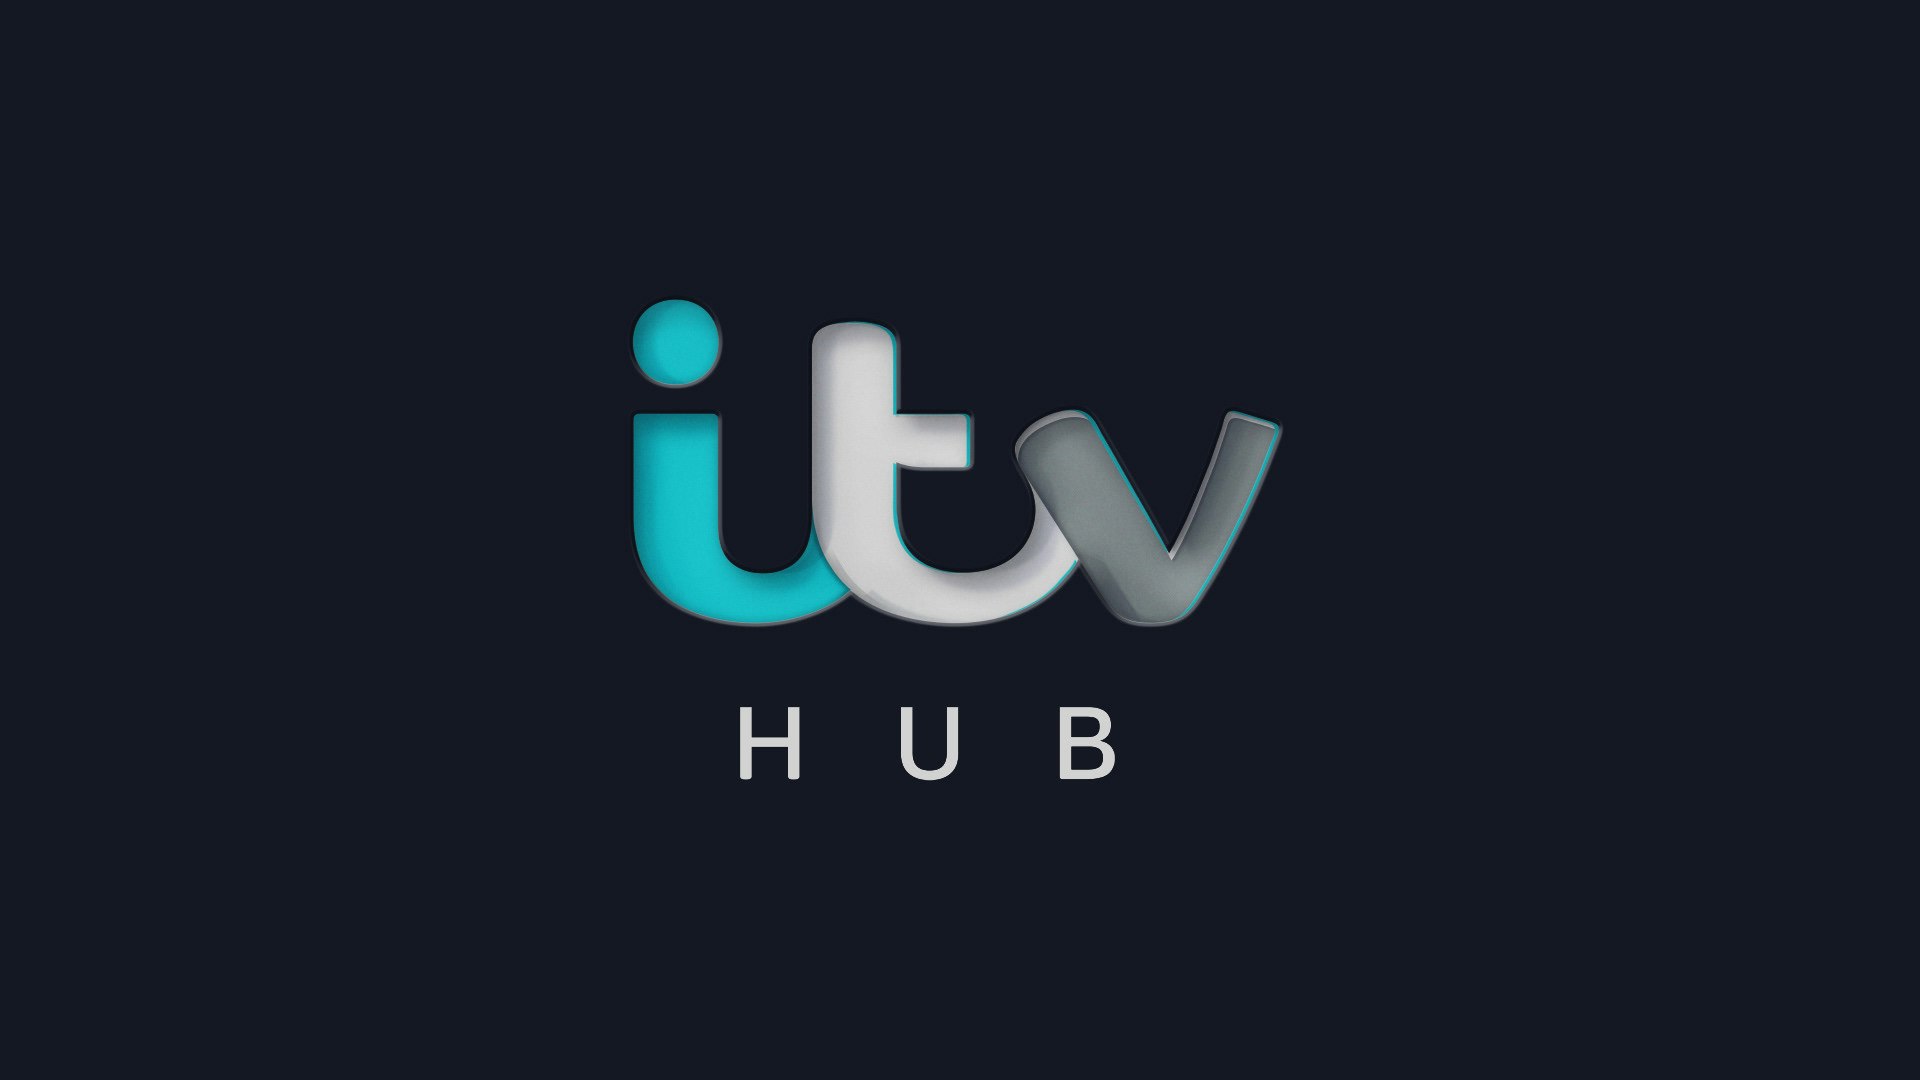 Jason Ford - ITV Hub Identity